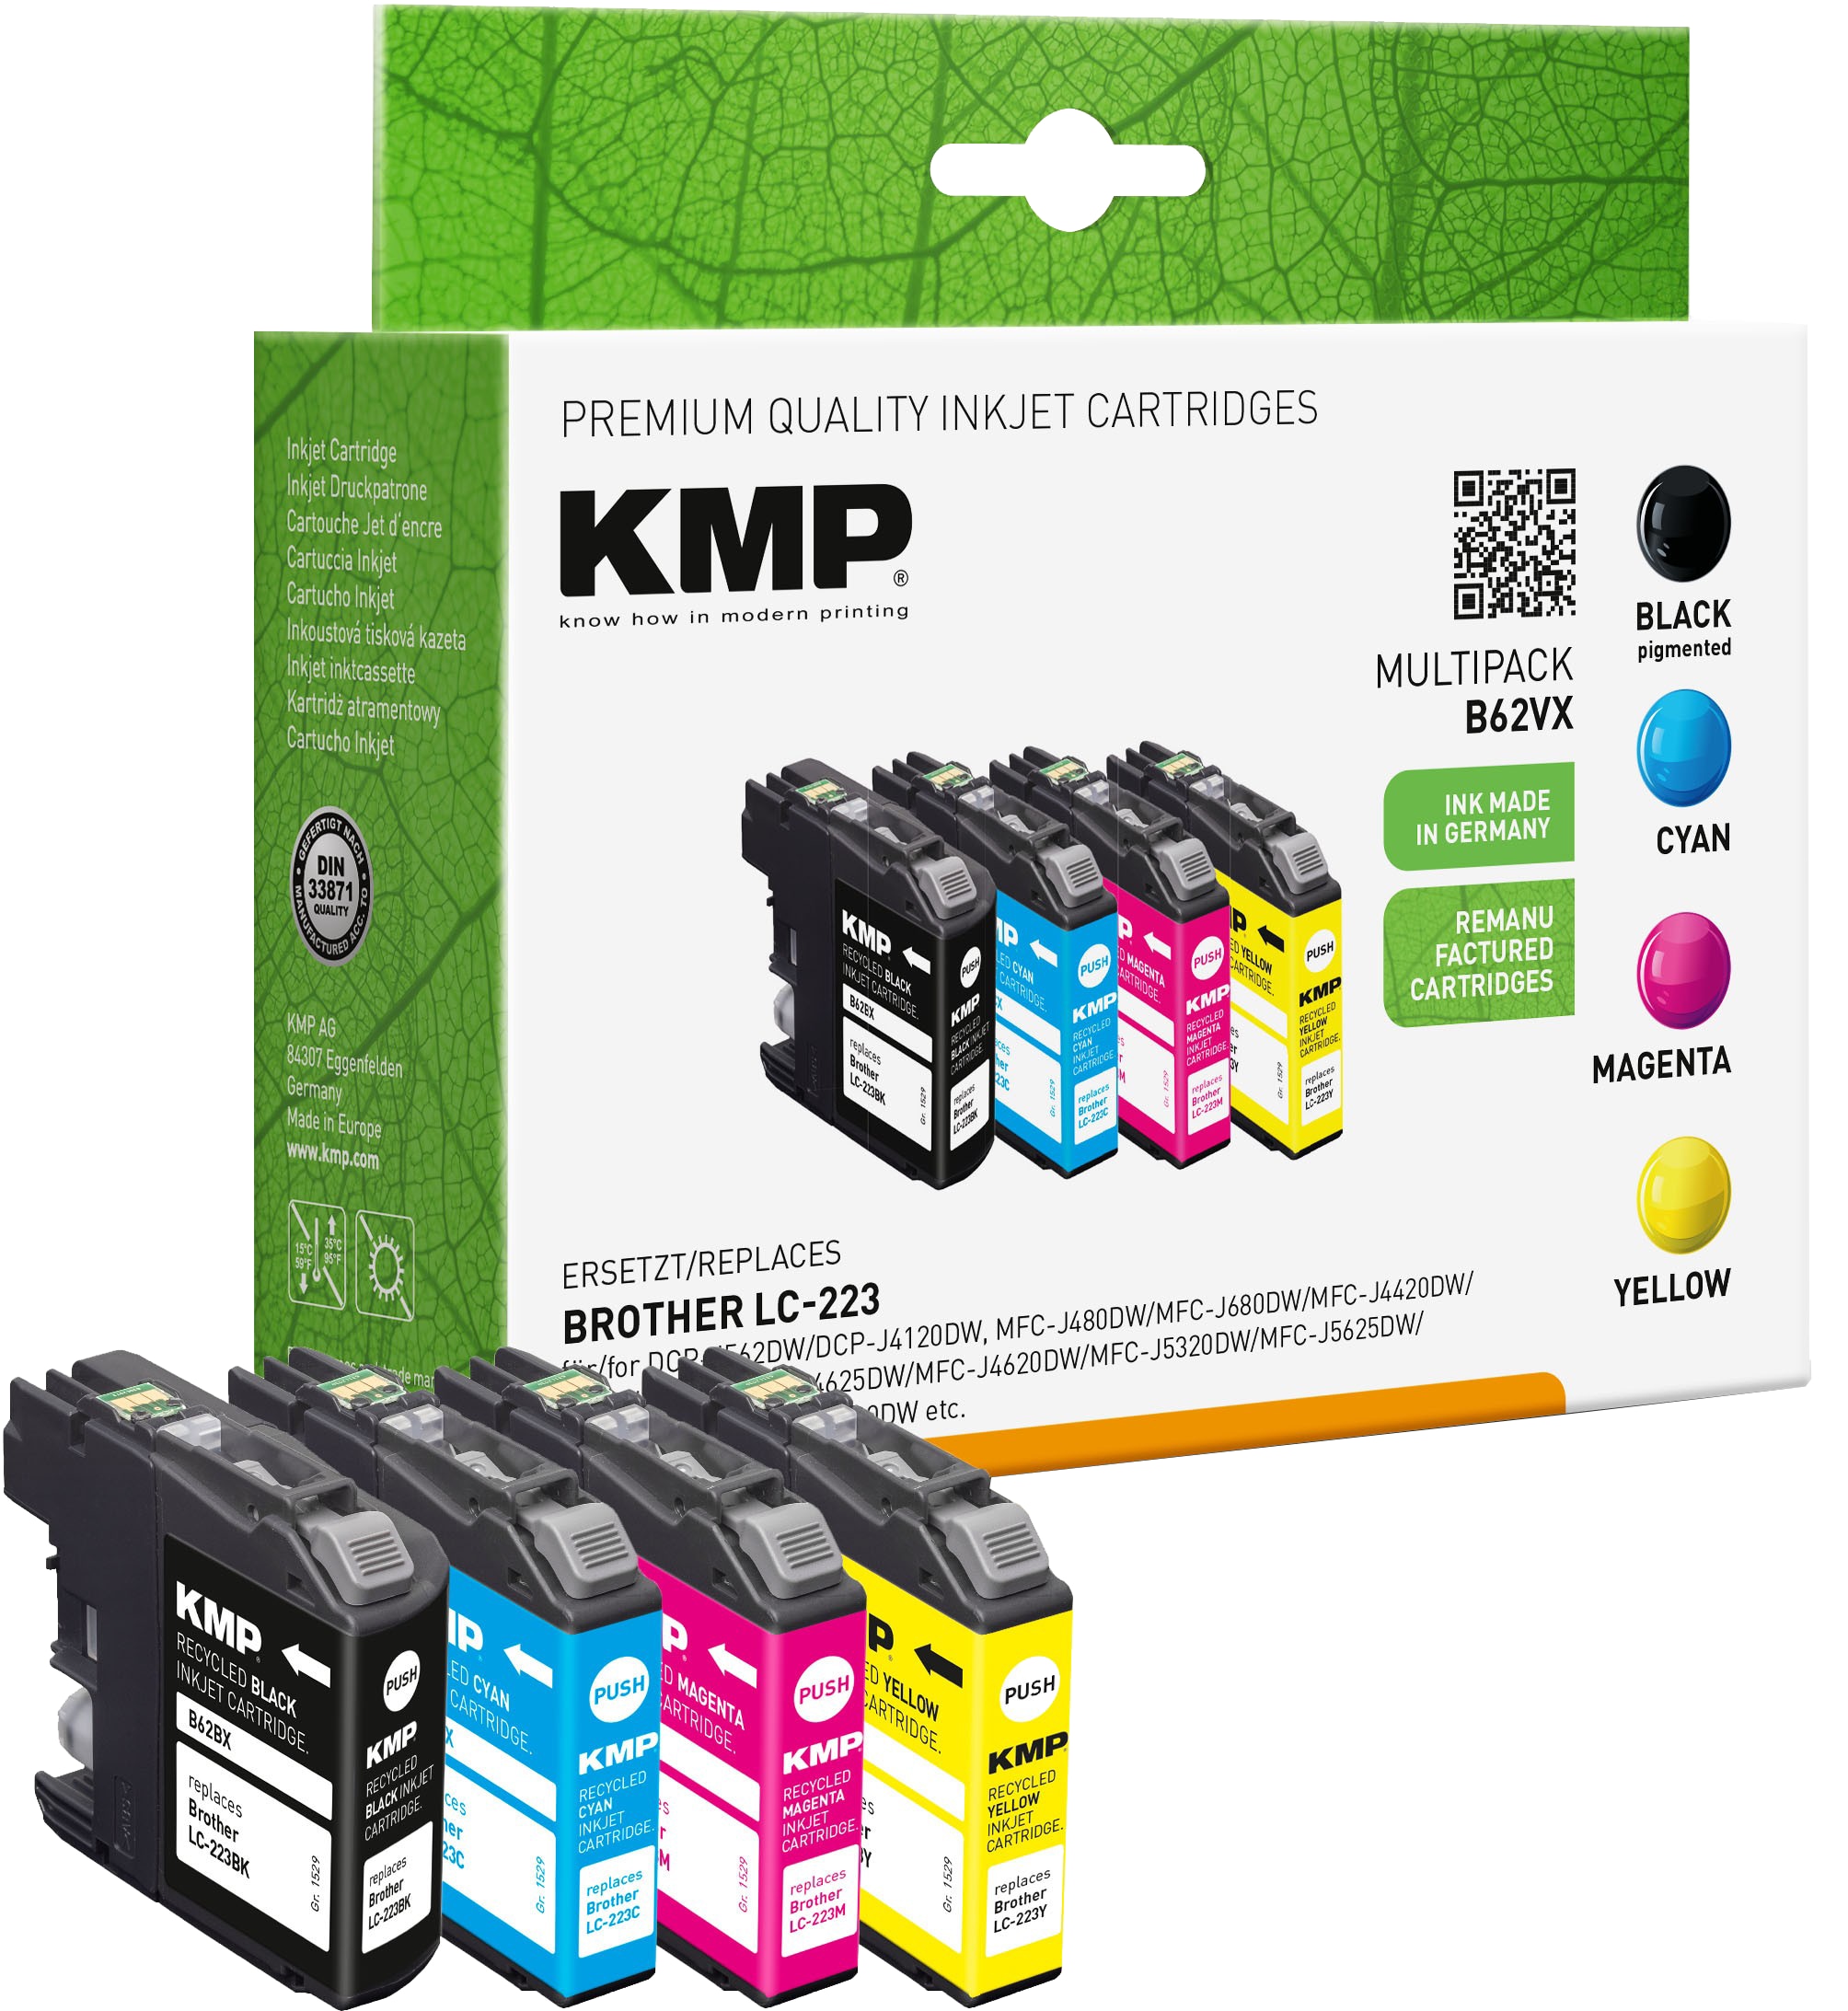 KMP Tintenpatronen Multipack B62VX ersetzt Brother LC-223